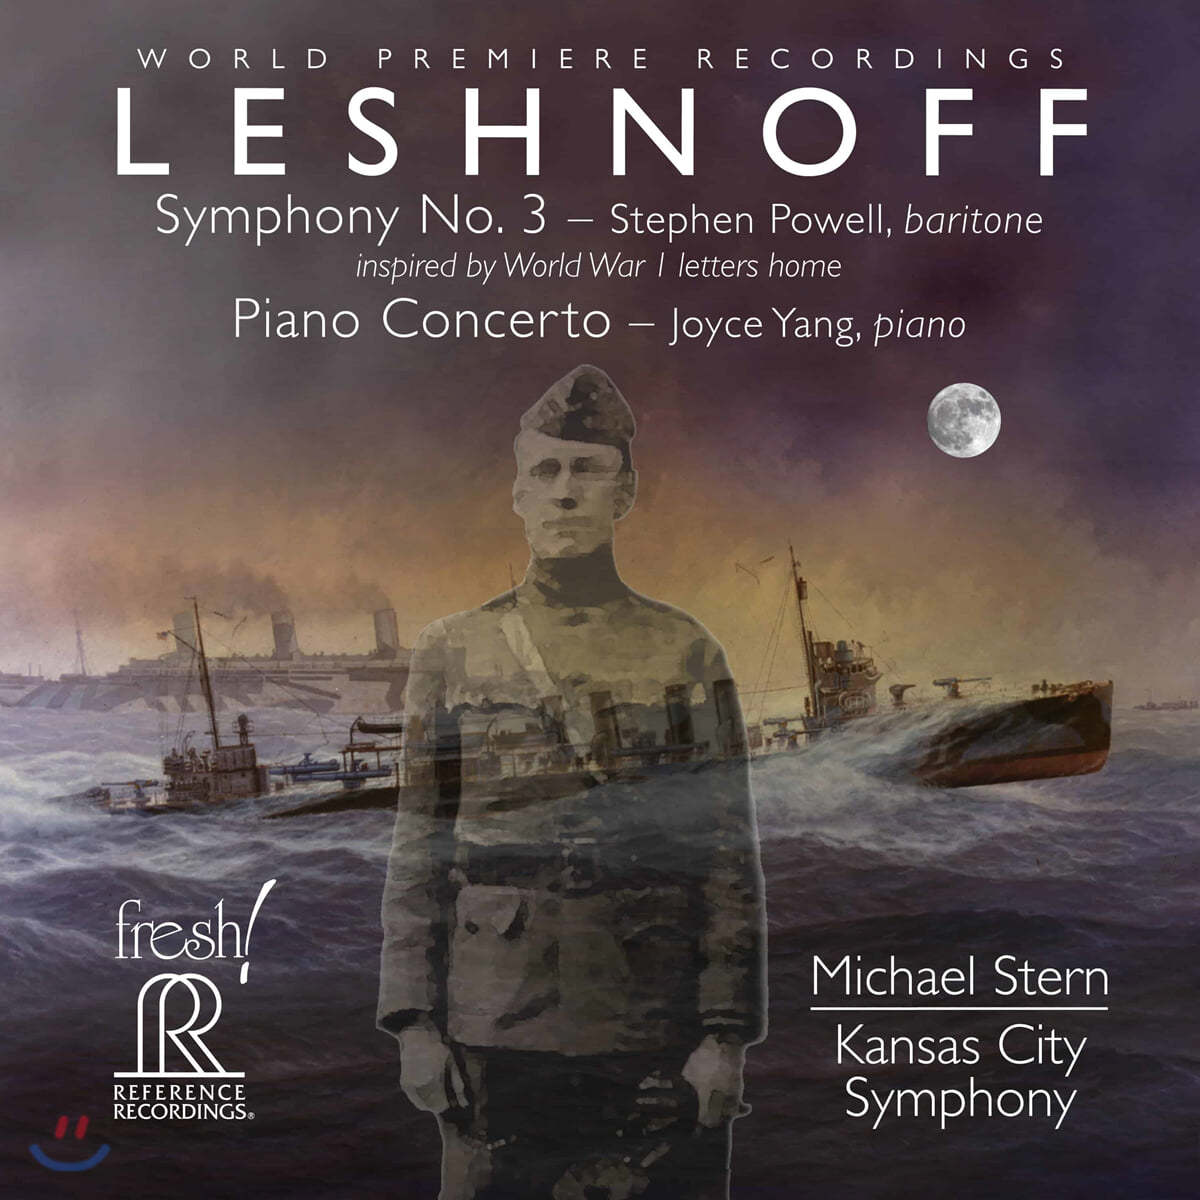 양희원 / Michael Stern 조나단 래쉬노프: 교향곡 3번, 피아노 협주곡 (Jonathan Leshnoff: Symphony No.3, Piano Concerto) 